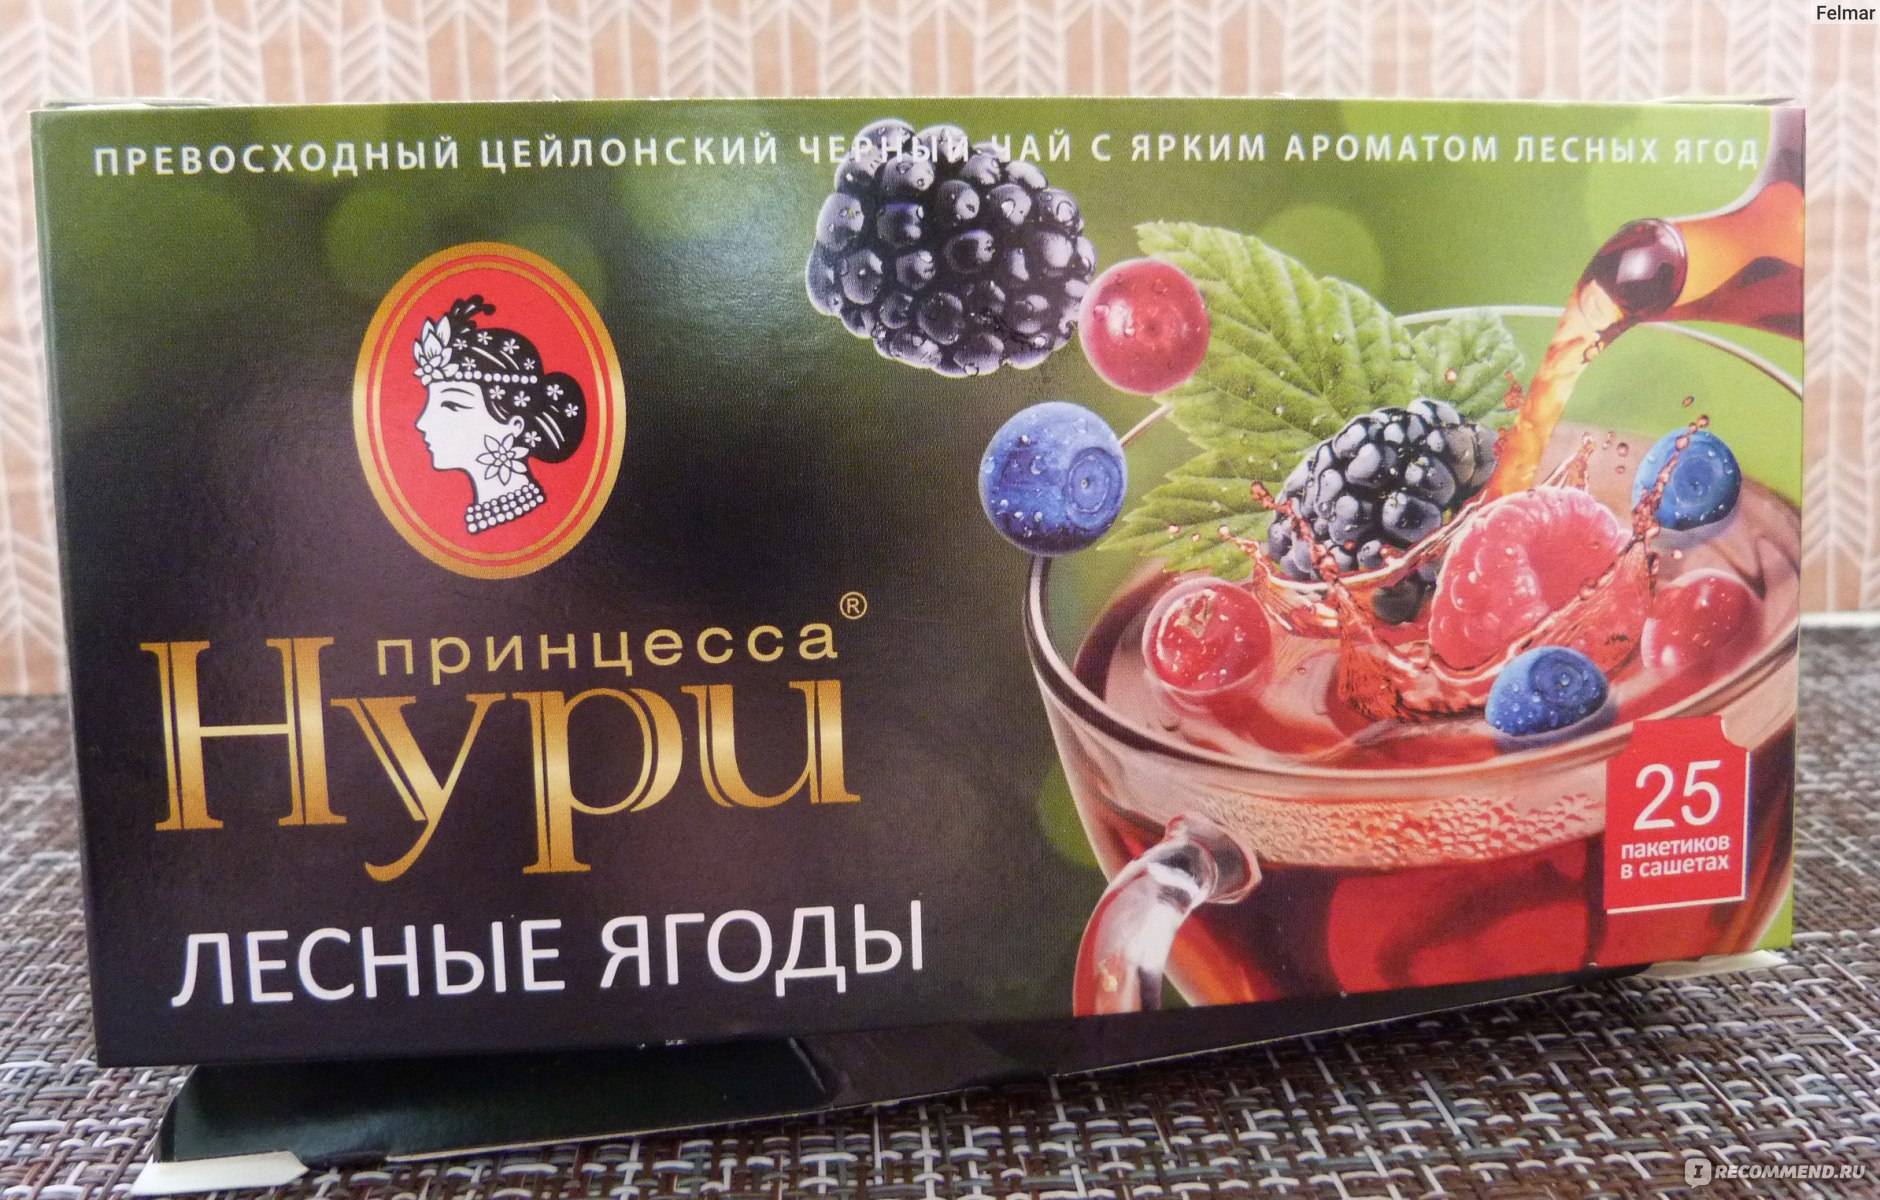 Noori-tea-promo.ru | зарегистрировать код в акции принцесса нури